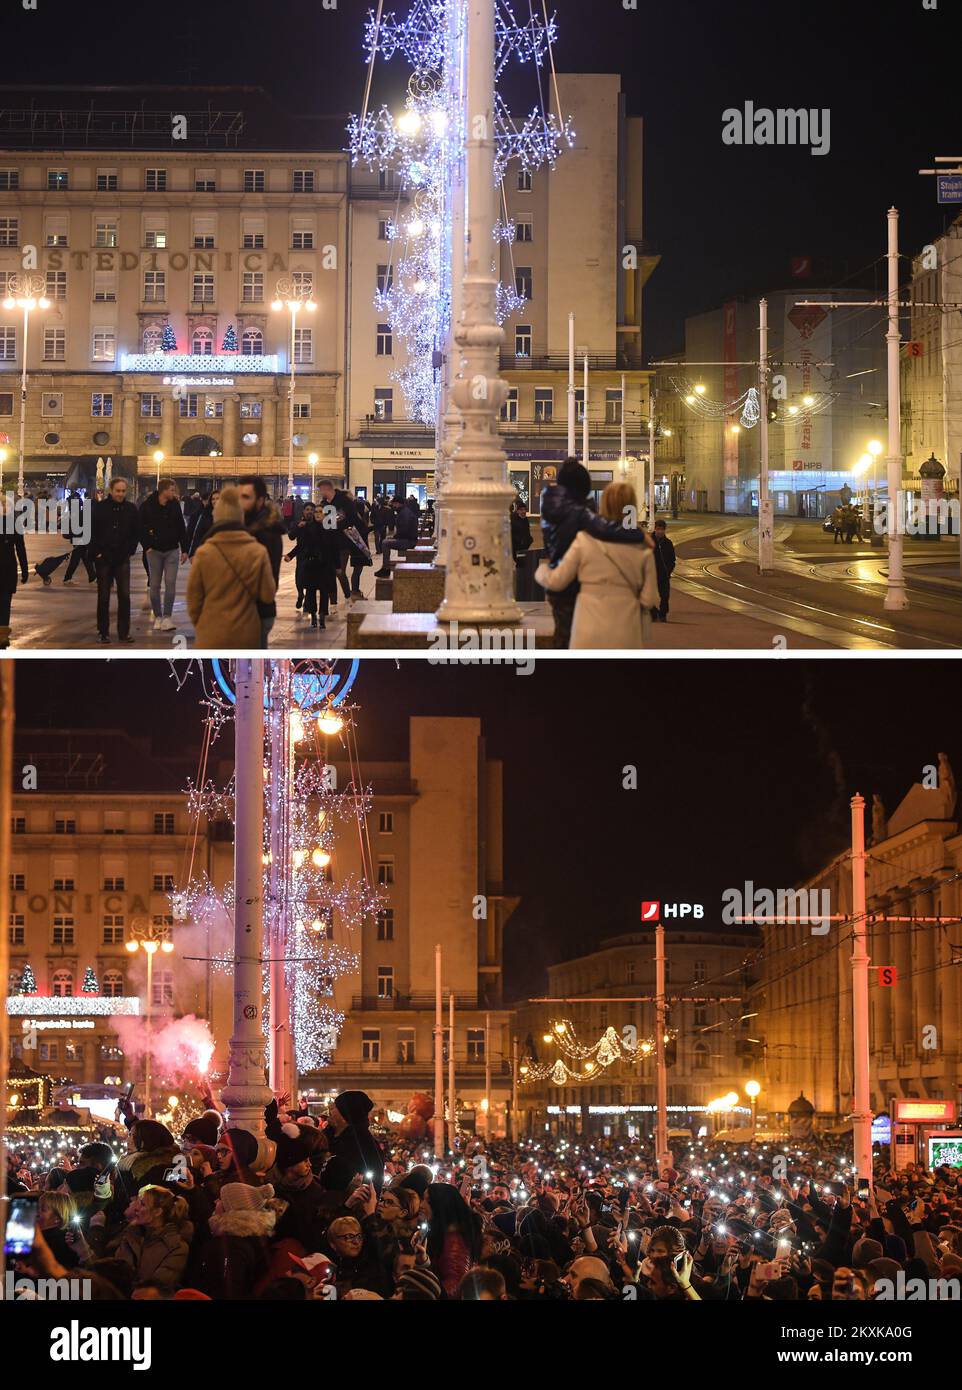 L'immagine combinata mostra una piazza Ban Jelacic durante una celebrazione di Capodanno a Zagabria, Croazia, il 31 dicembre 2019. E la piazza dopo la celebrazione è stata annullata a causa di preoccupazioni COVID-19 a Zagabria, Croazia, il 31,2020 dicembre. Foto: Marko Lukunic/PIXSELL e Sandra Simunovic/PIXSELL Foto Stock